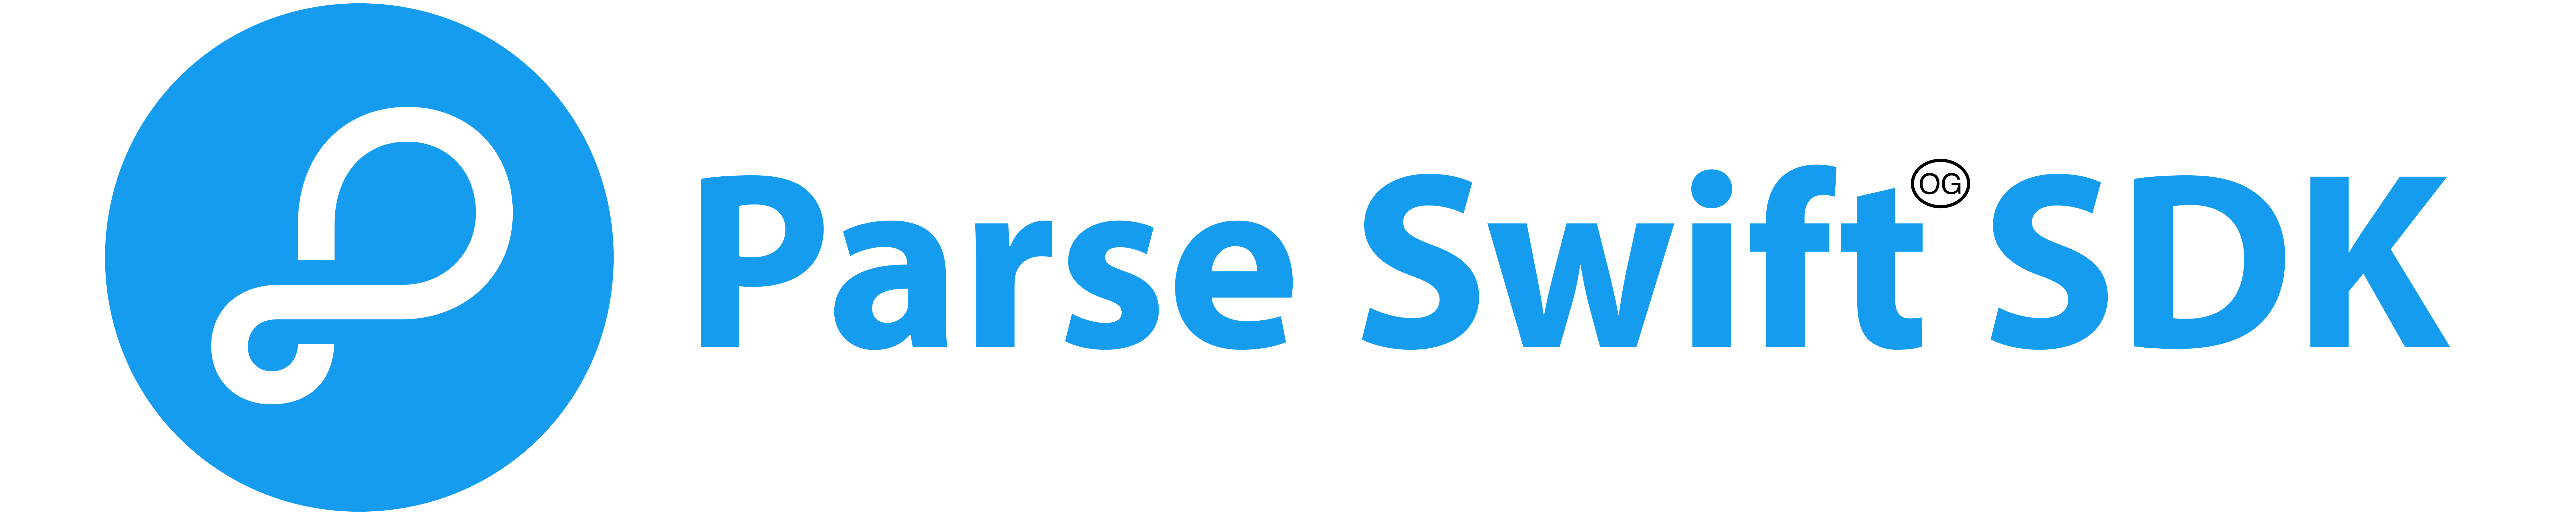 parse-swift